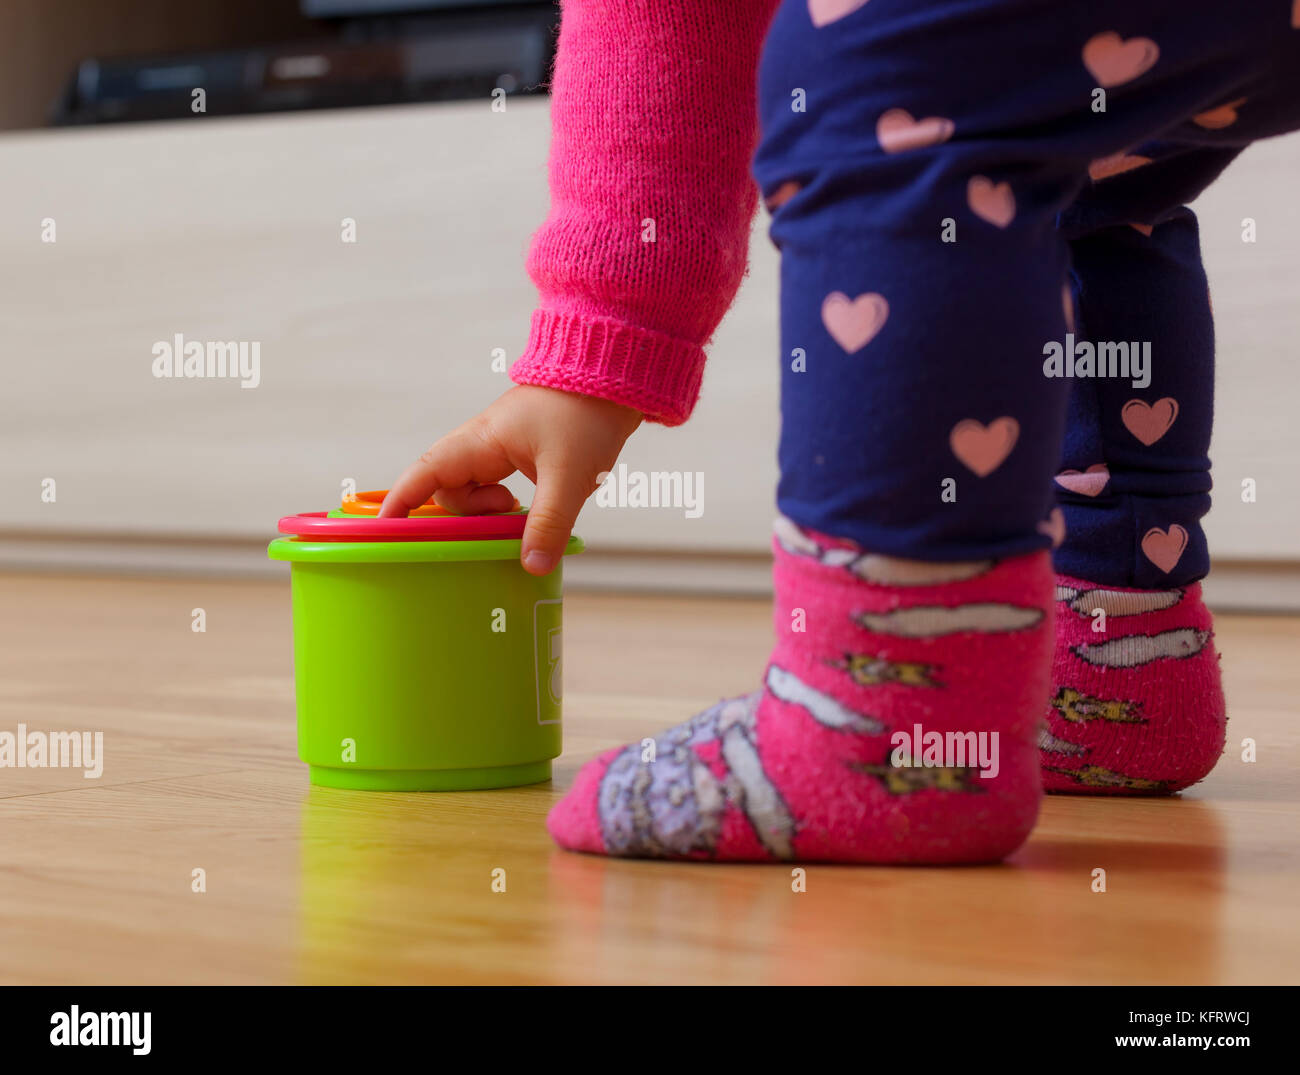 Kleinkind Baby Mädchen spielt mit farbigen Schalen, Spielzeug für die kognitive Entwicklung. Stockfoto